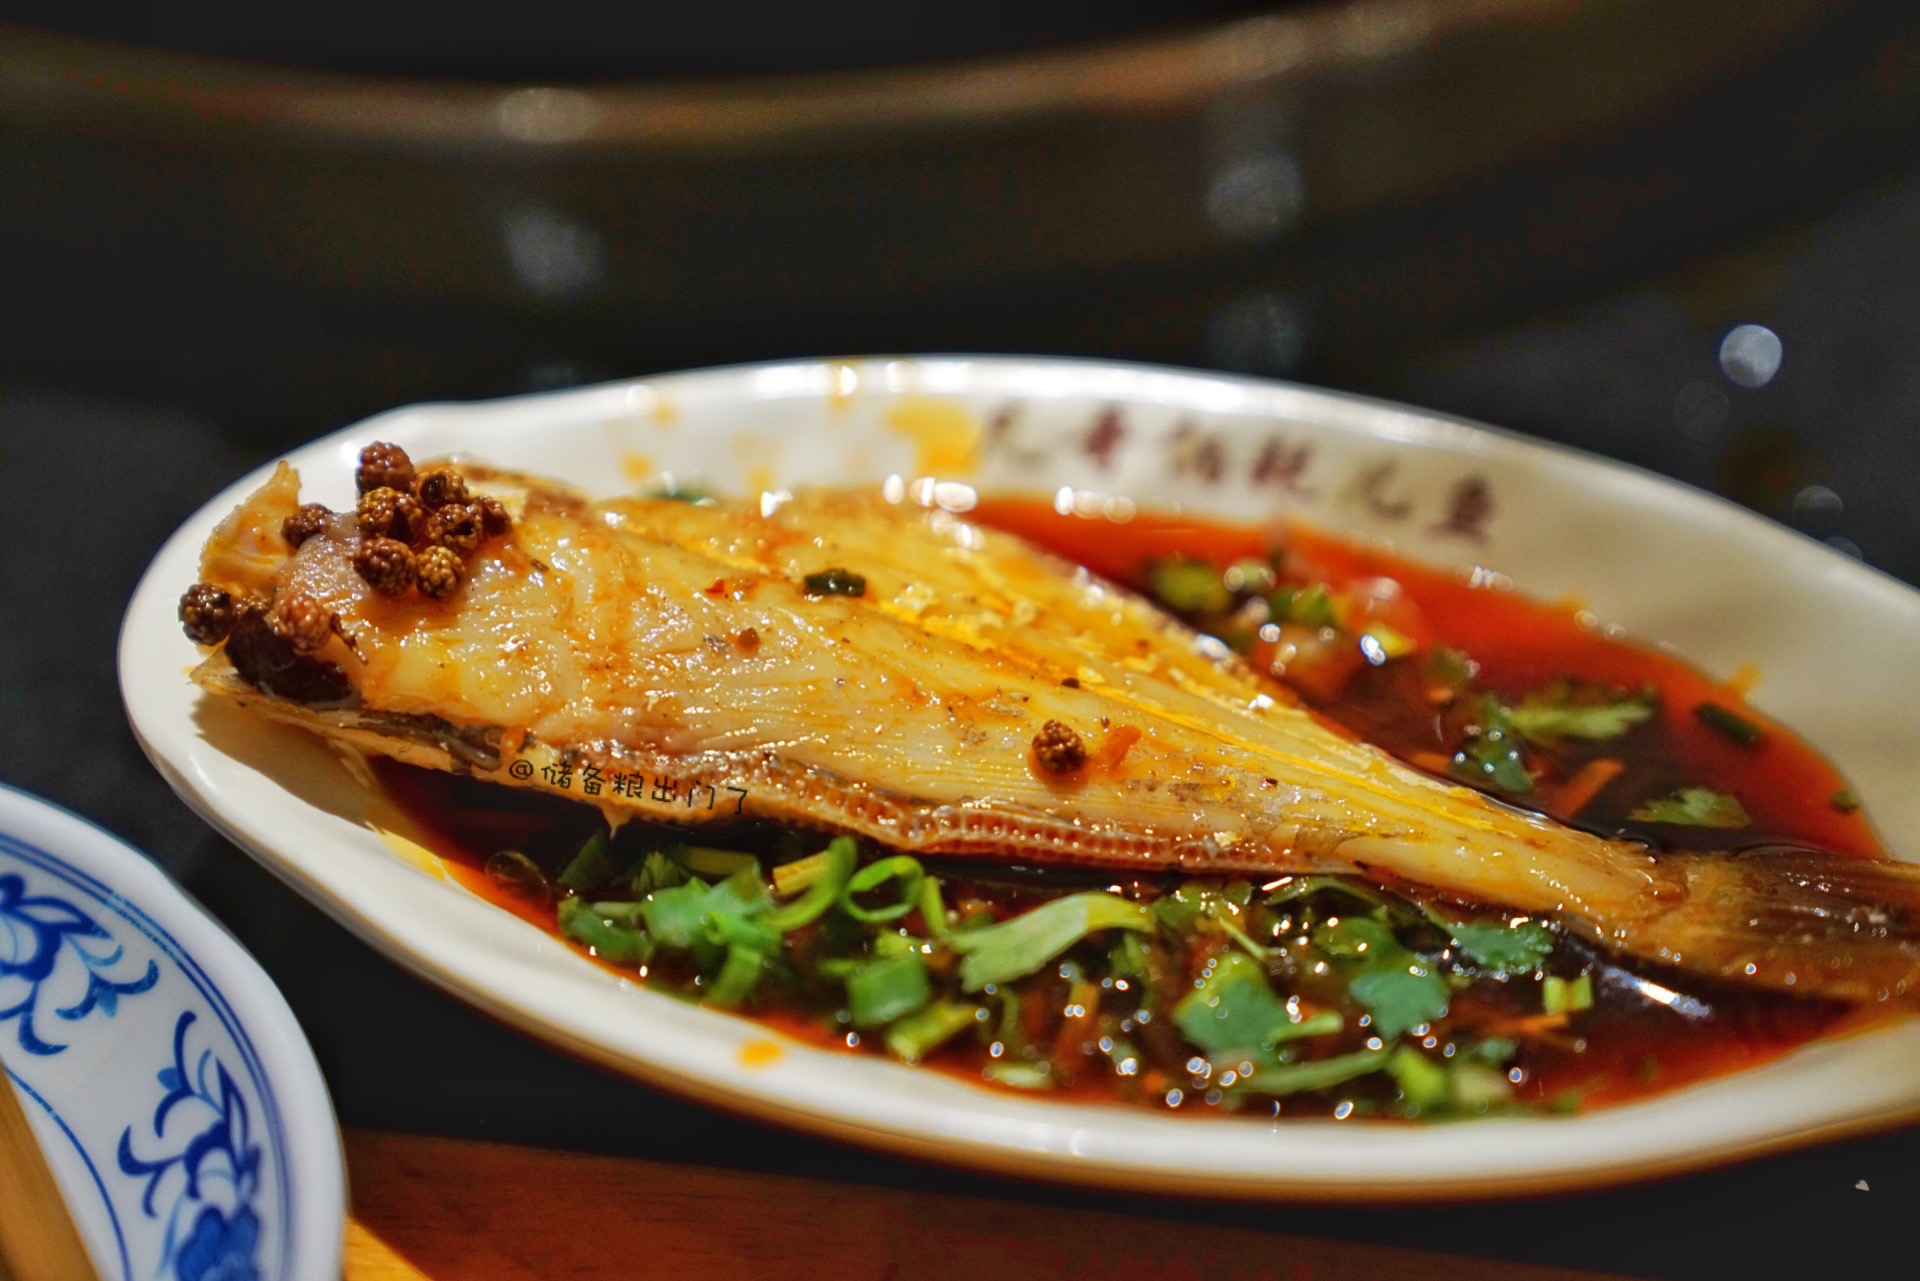 山城特色吊锅耗儿鱼,主菜配菜一锅烩,美食与文化的完美结合